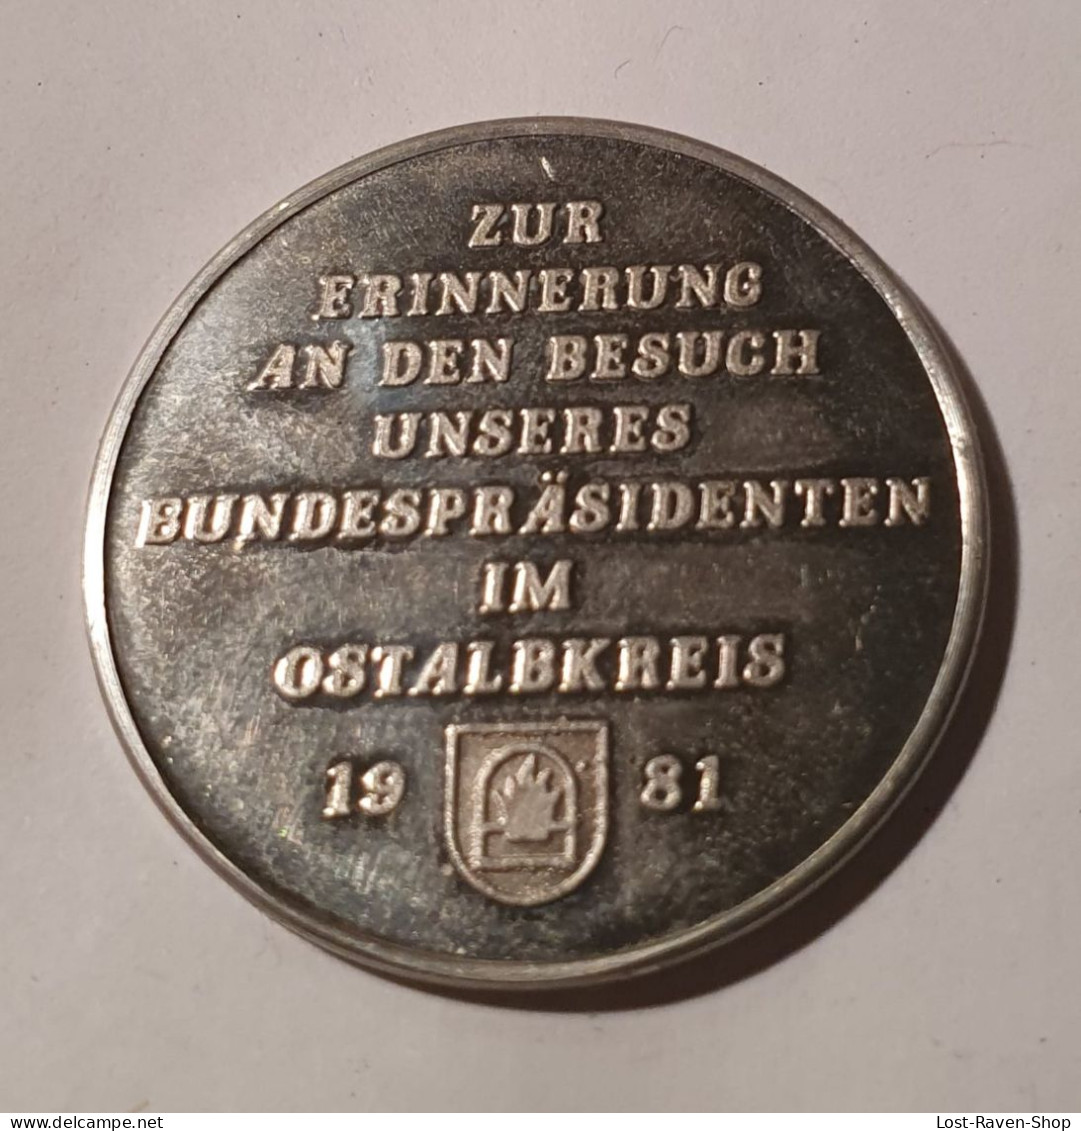 Zur Erinnerung An Den Besuch Unseres Bundespräsidenten Im Ostalbkreis 1981 - Karl Carstens - Souvenirmunten (elongated Coins)